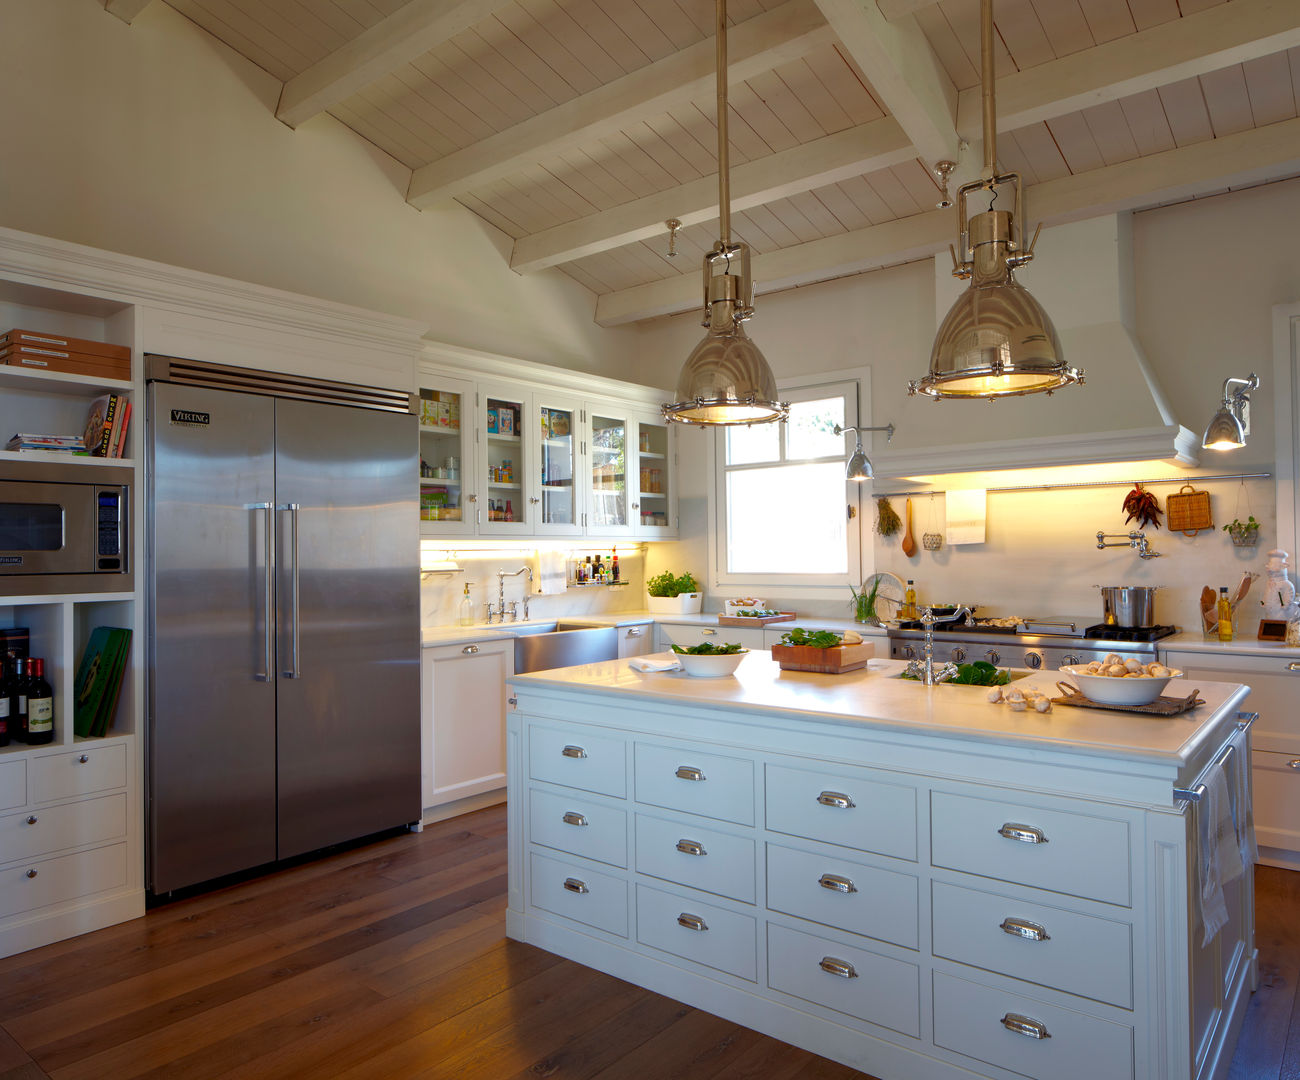 Cocina de estilo americano , DEULONDER arquitectura domestica DEULONDER arquitectura domestica Kitchen